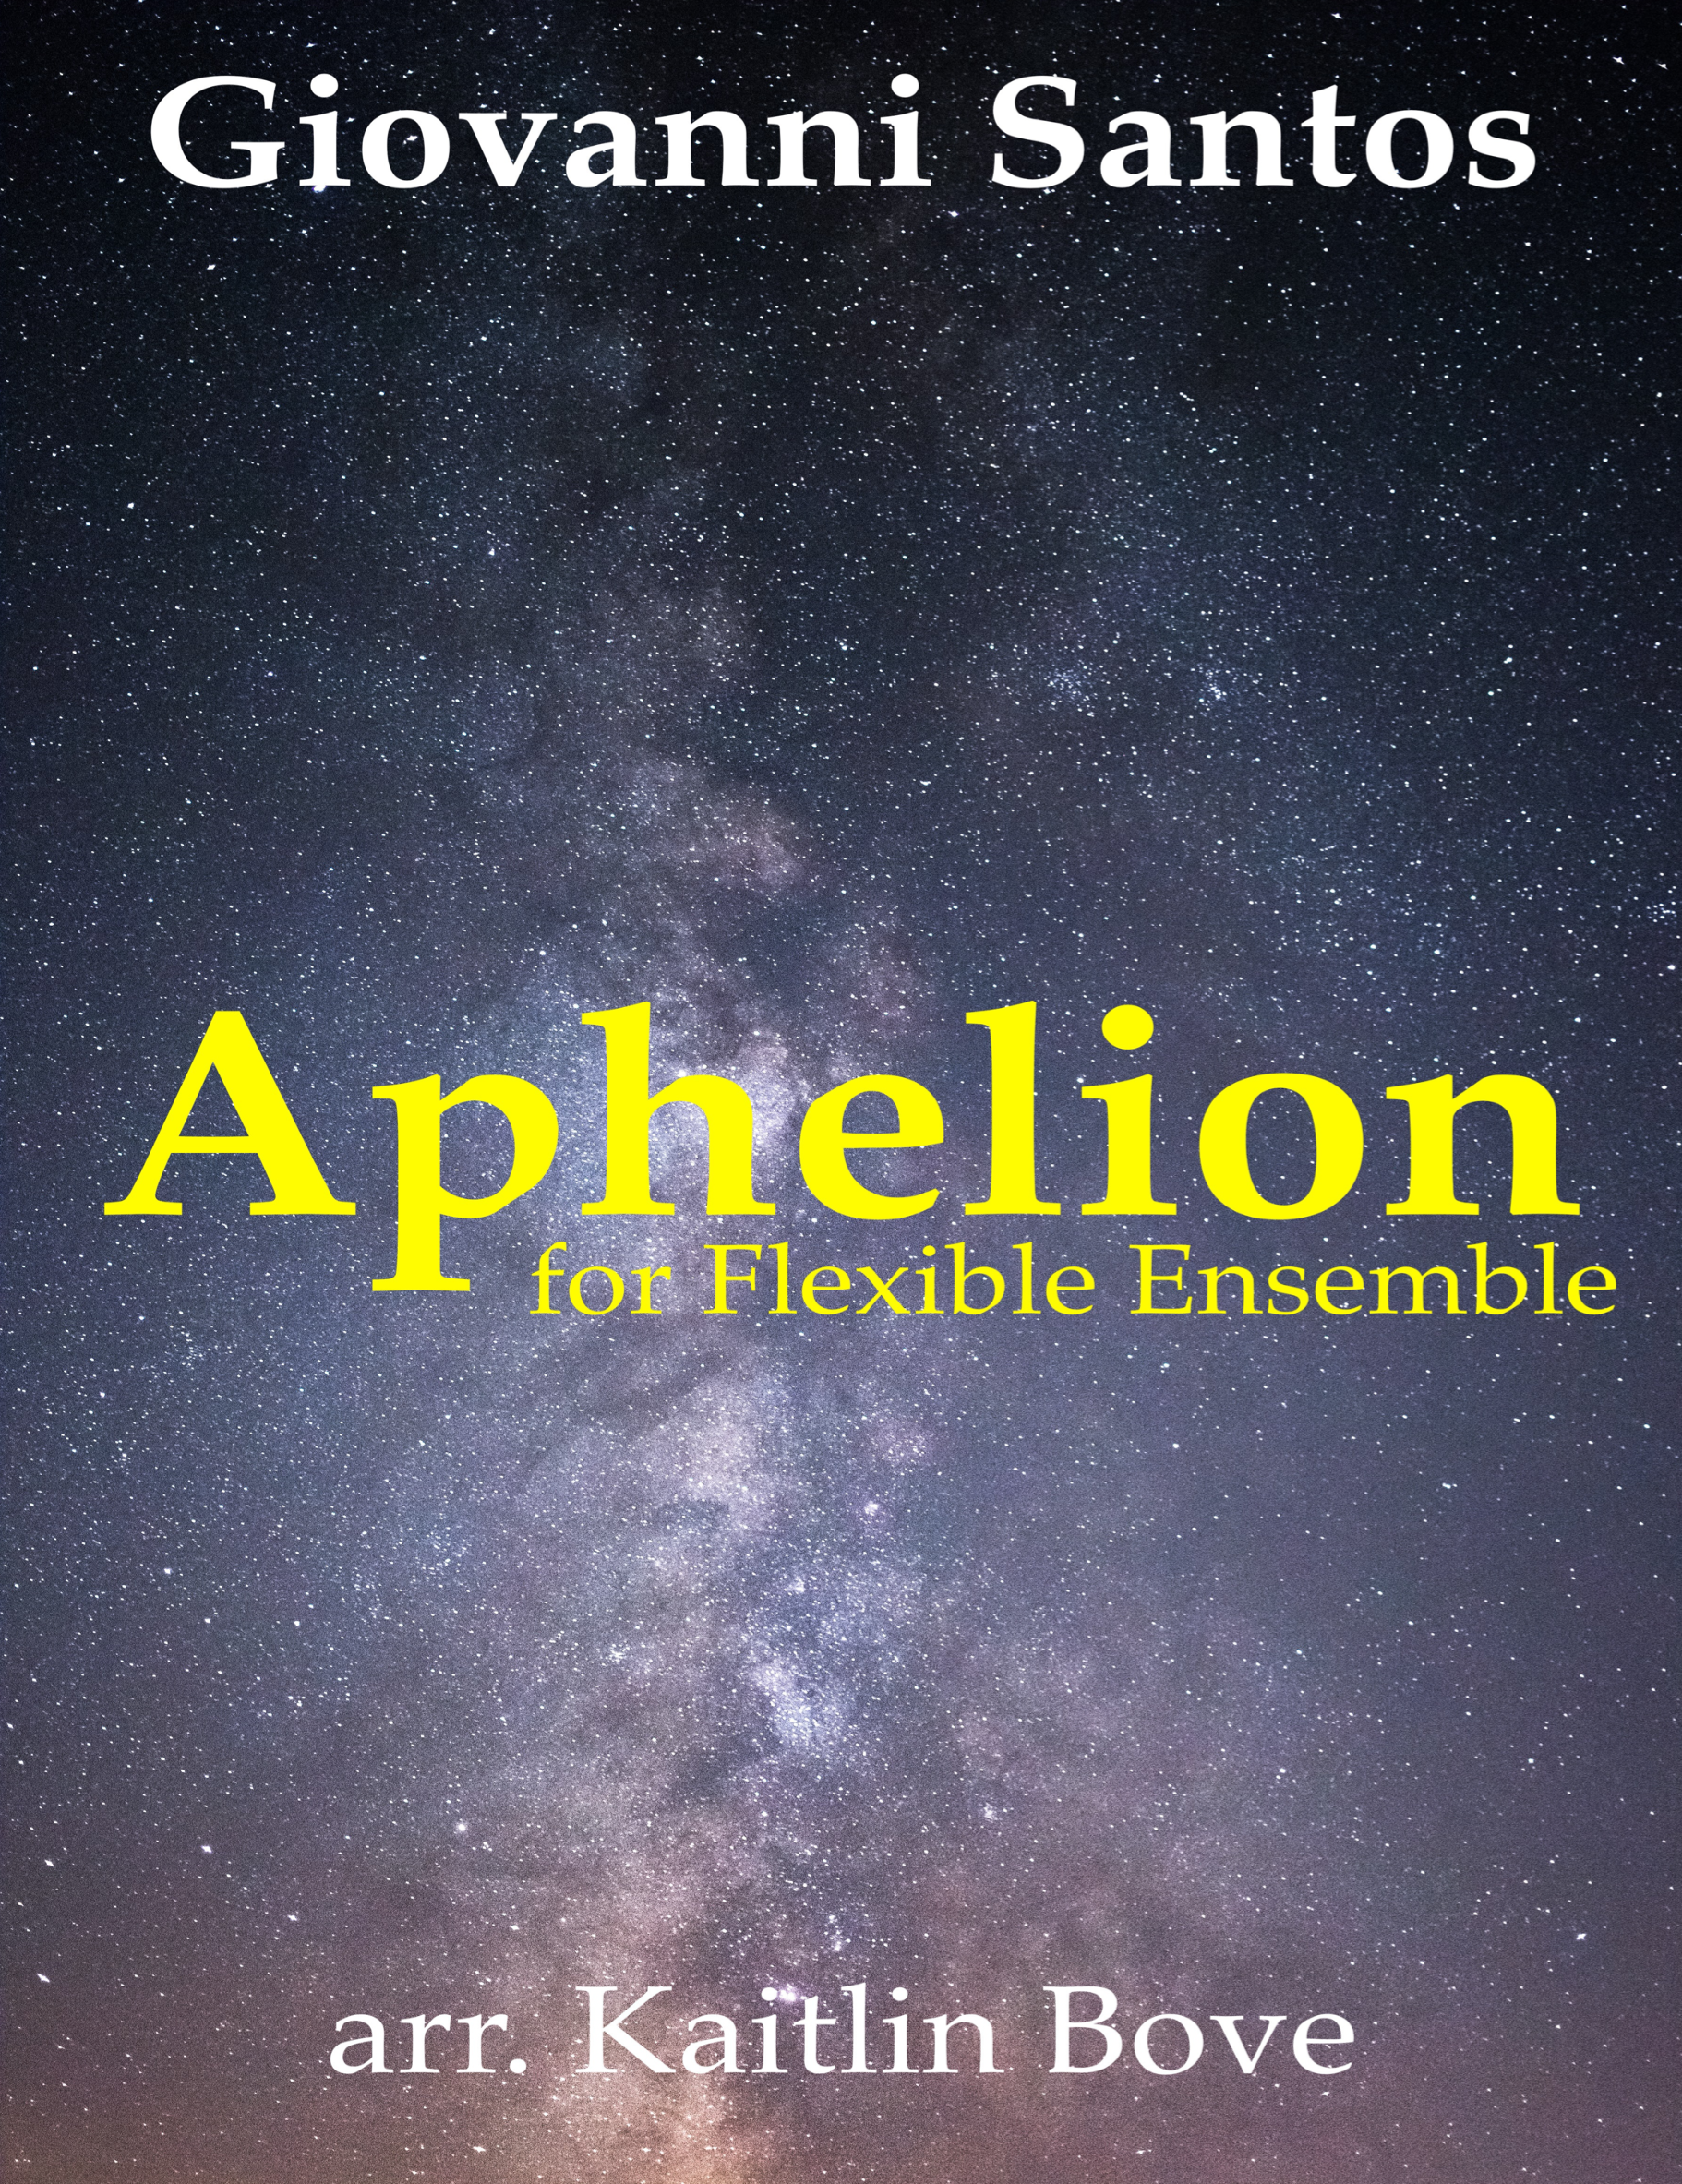 Aphelion (Flex Version) by Giovanni Santos, arr. Bove